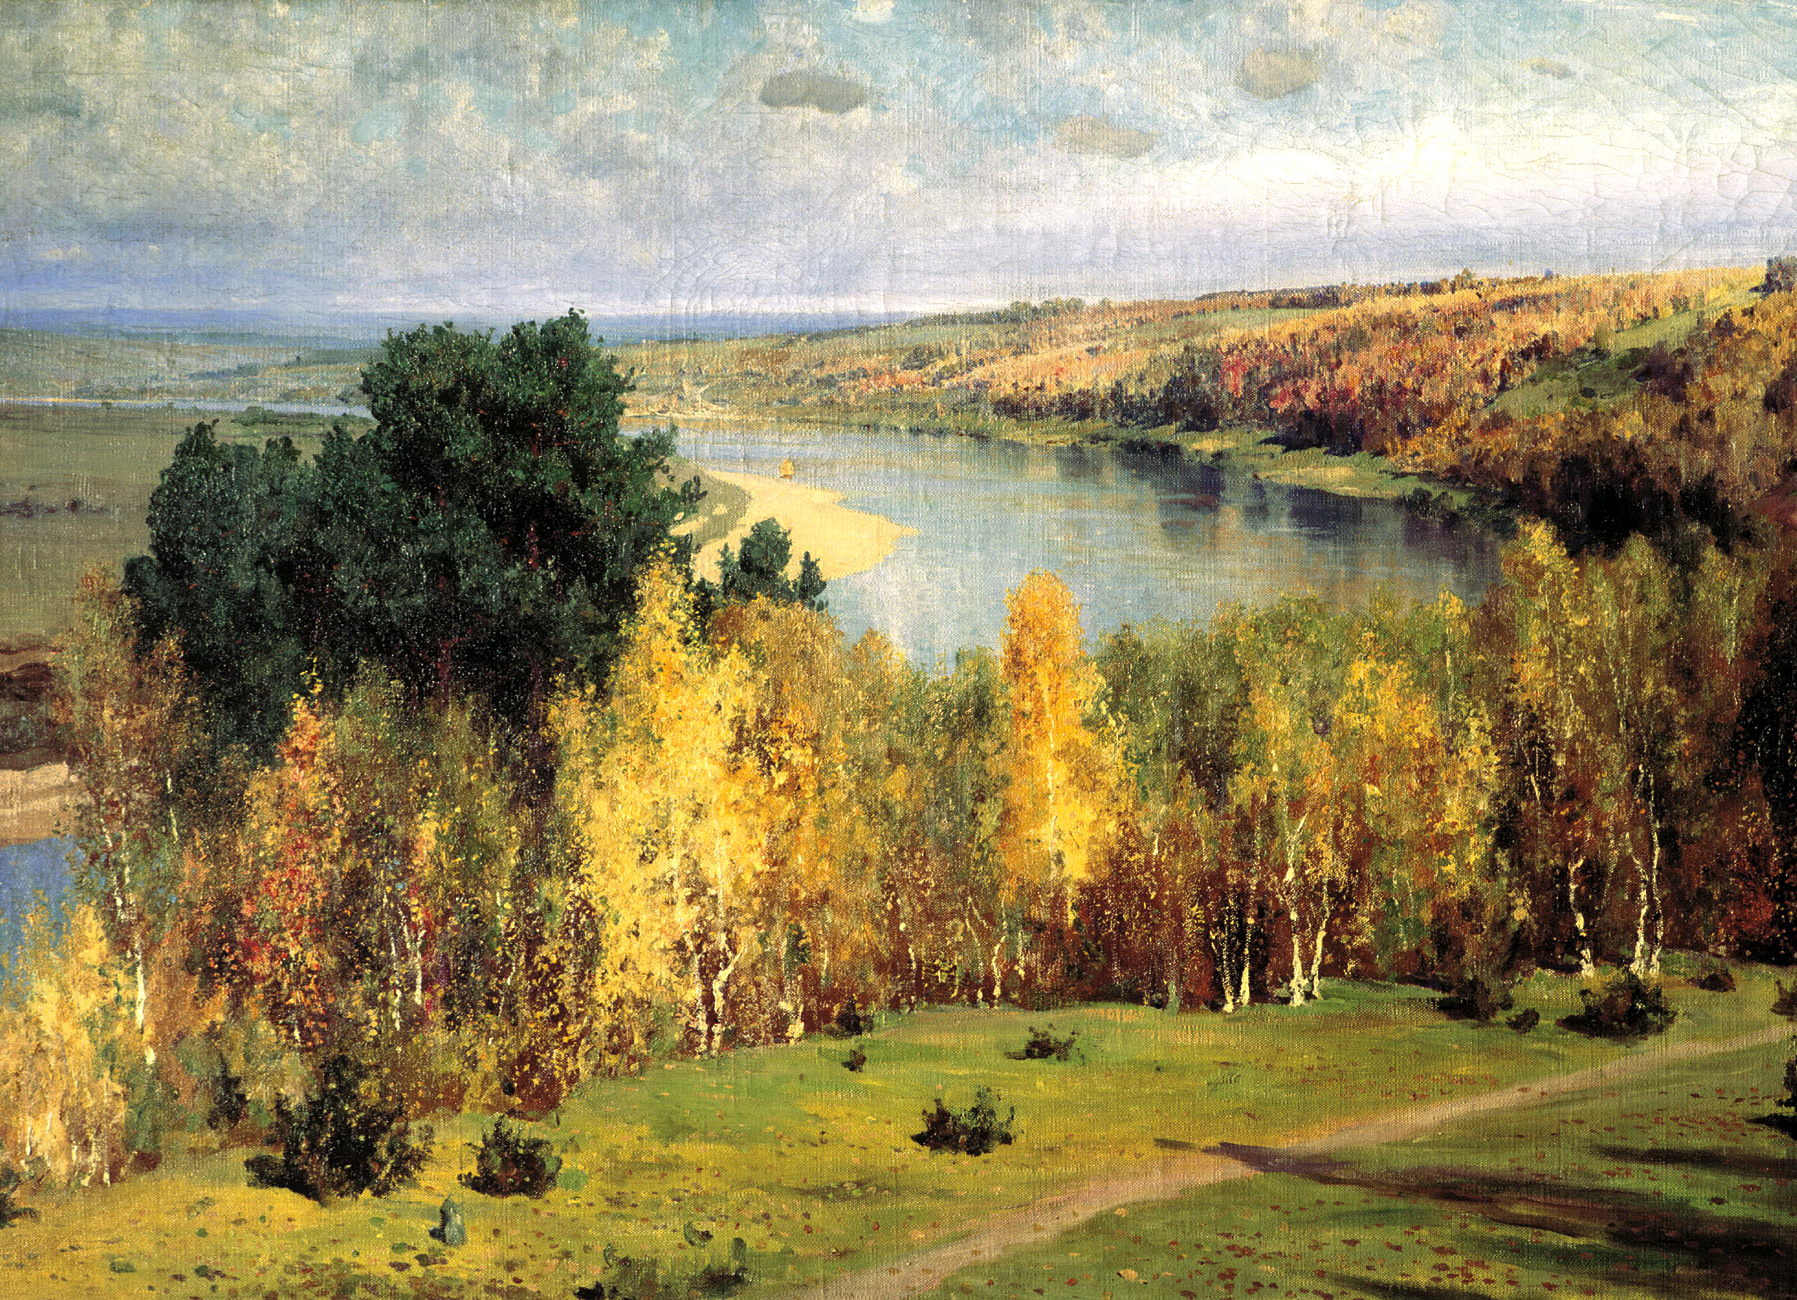 ポレノフが描いた多くの絵画は、オカ川の岸を含め、彼が人生の中でも長い期間を過ごした思い入れのある場所を描いたものである。彼の作品「黄金色の秋」も例外ではなく、それはこの画家による最重要作品のひとつに数えられている。 // ヴァシーリイ・ポレノフ、「黄金色の秋」、1893年